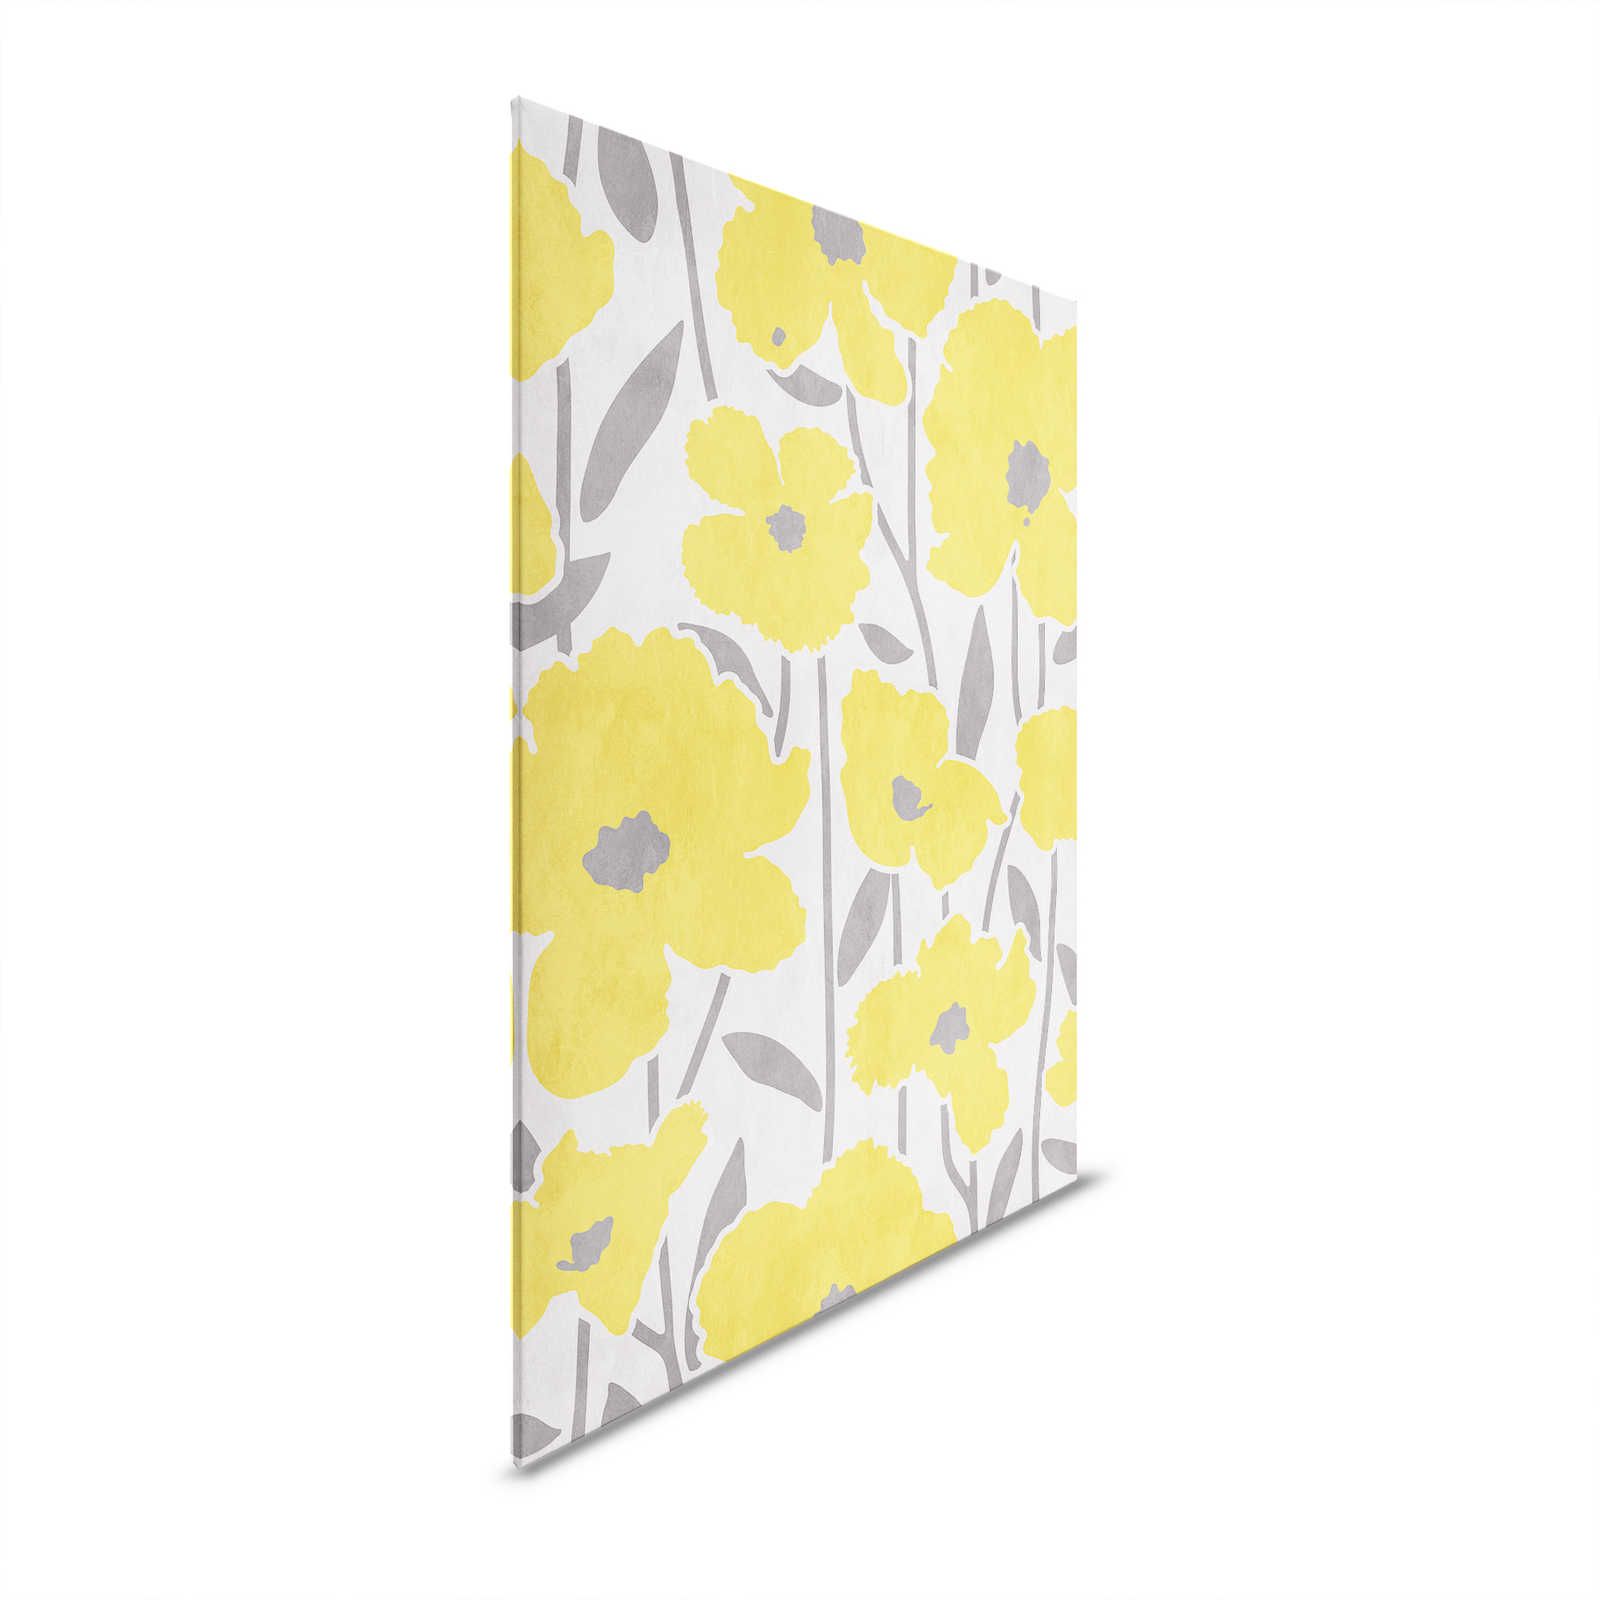 Mercato dei fiori 4 - Pittura su tela floreale gialla e grigia con effetto renderizzato - 0,80 m x 1,20 m
